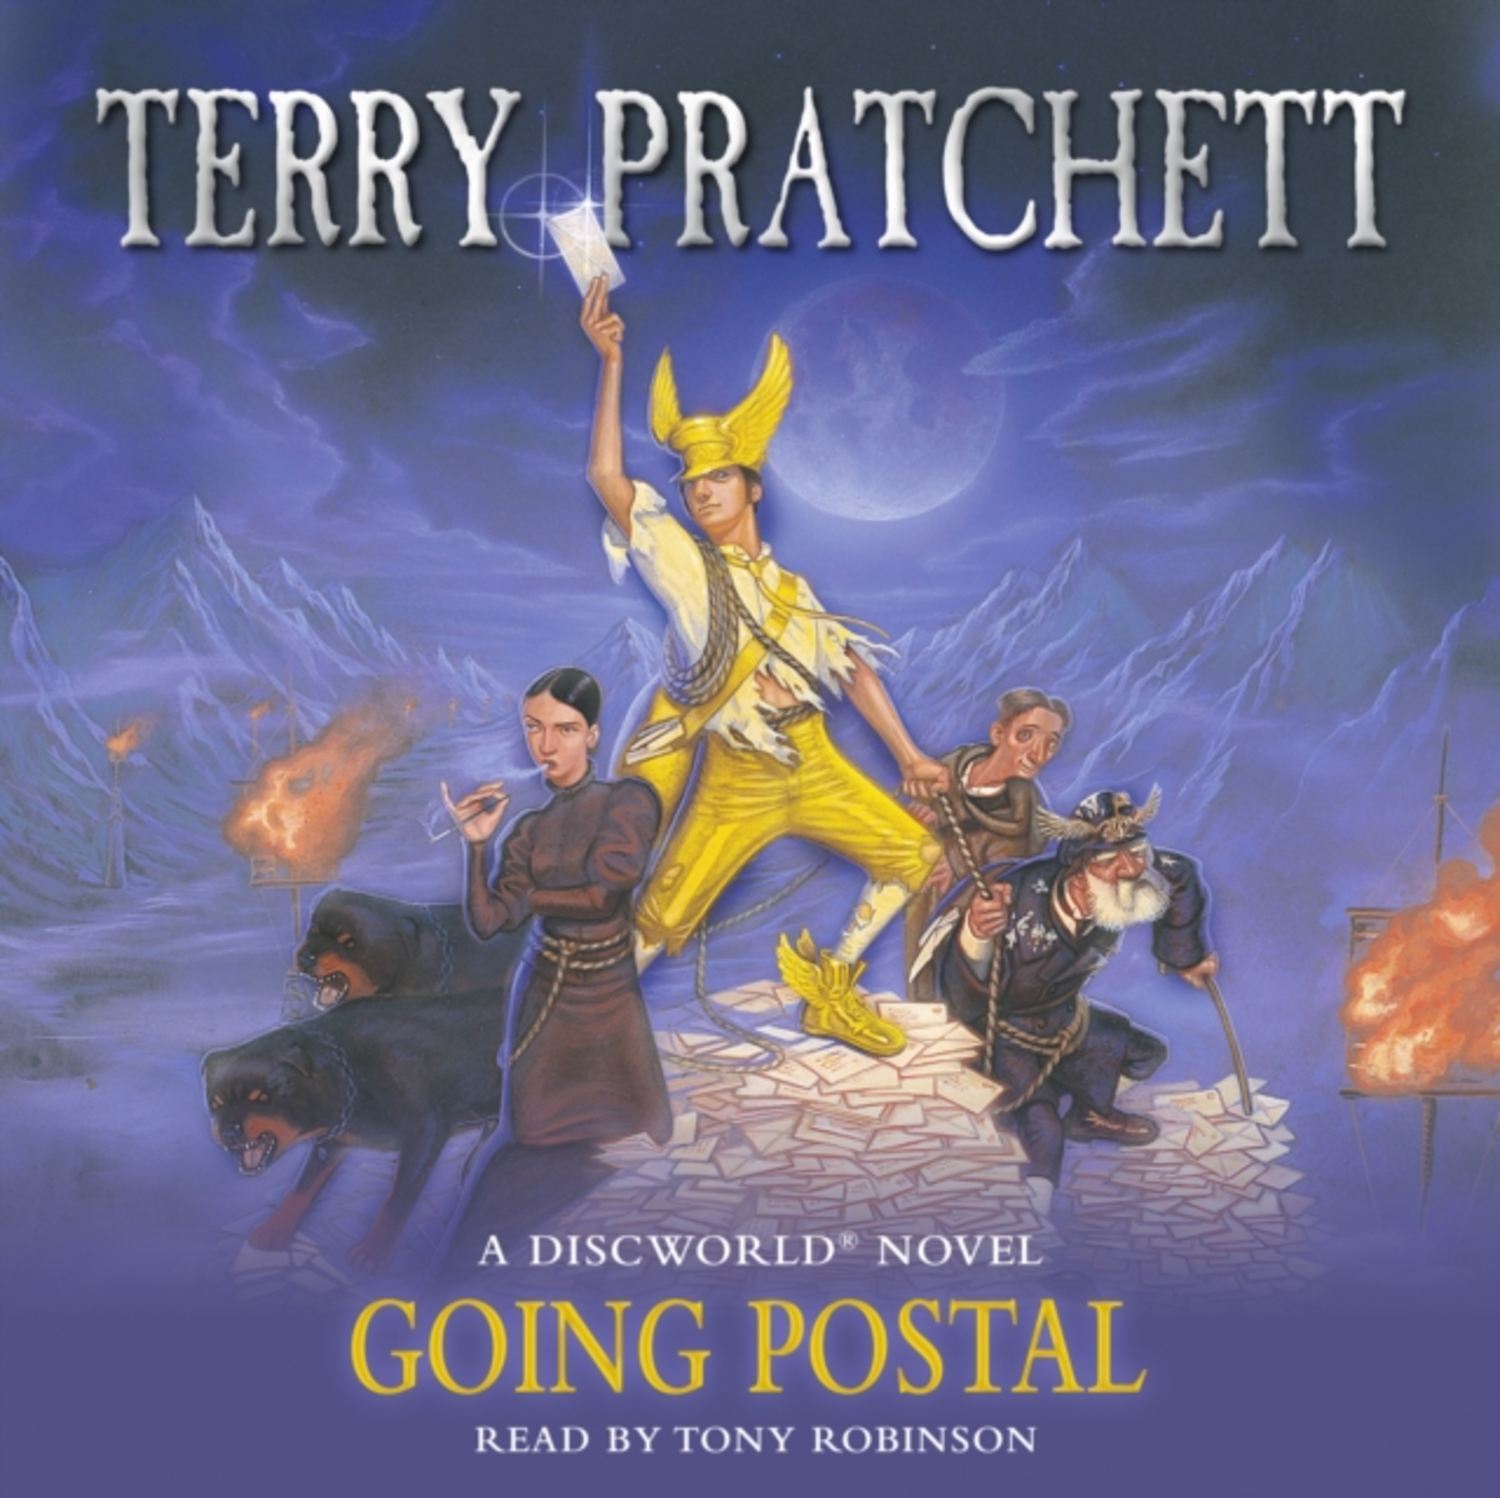 Терри пратчетт аудиокнига клюквин слушать. Опочтарение книга Терри Пратчетта. Аудиокнига Терри Пратчетт Опочтарение. Терри Пратчетт Опочтарение обложка. Terry Pratchett "going Postal".